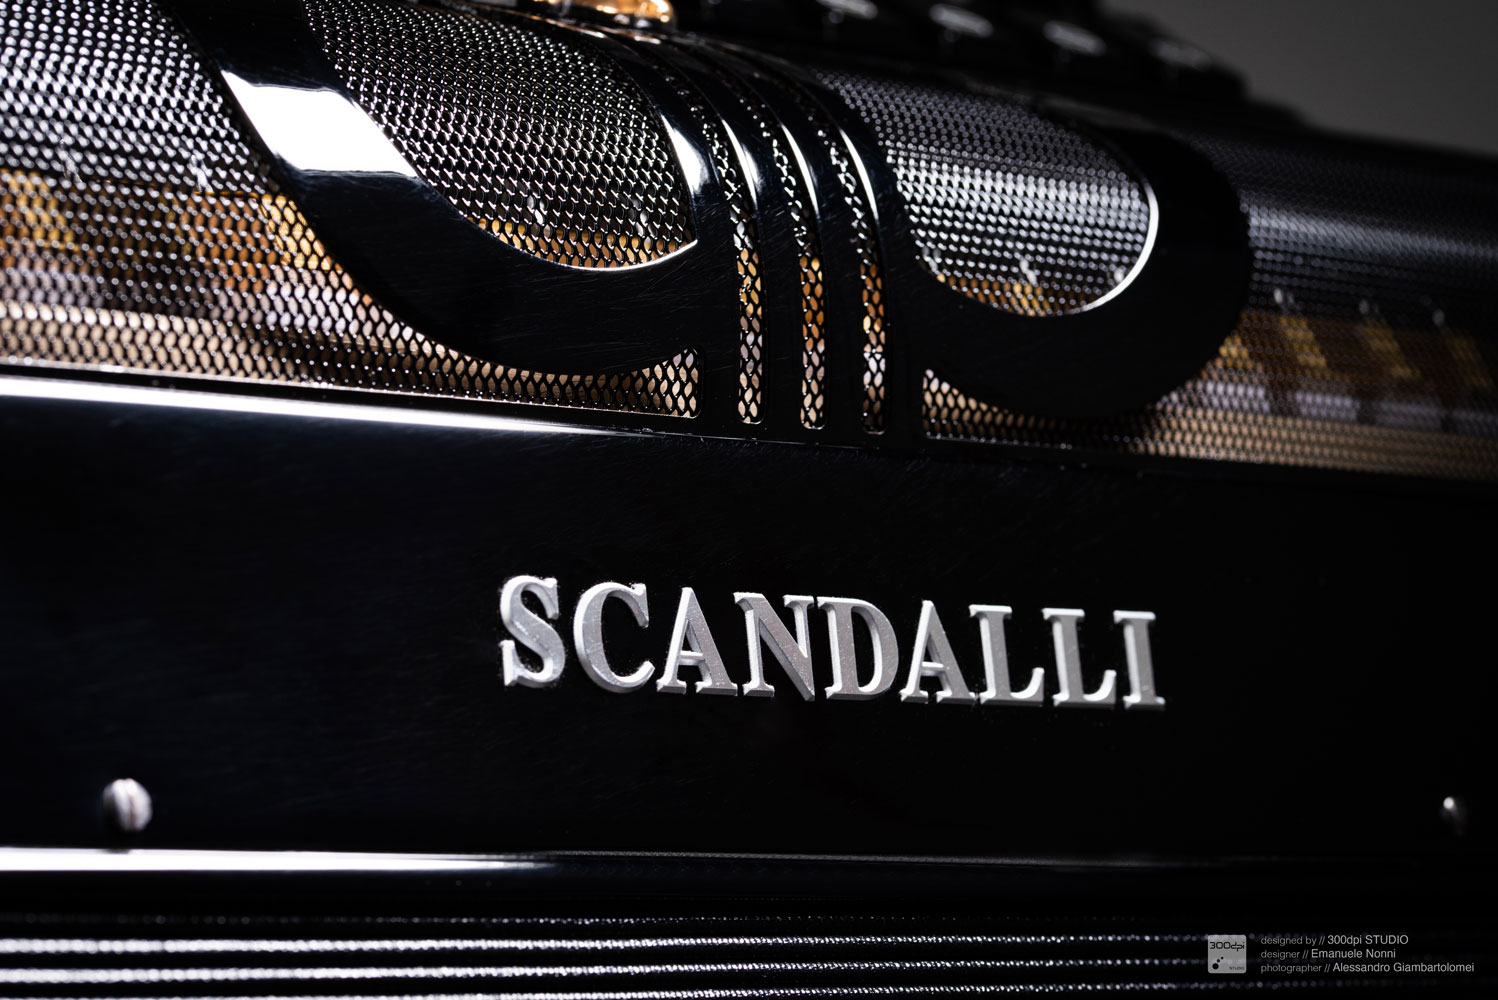 Dettaglio su logo fisarmonica cromatica da concerto - Scandalli Accordions - modello MUSA - design Emanuele Nonni - 300dpi STUDIO